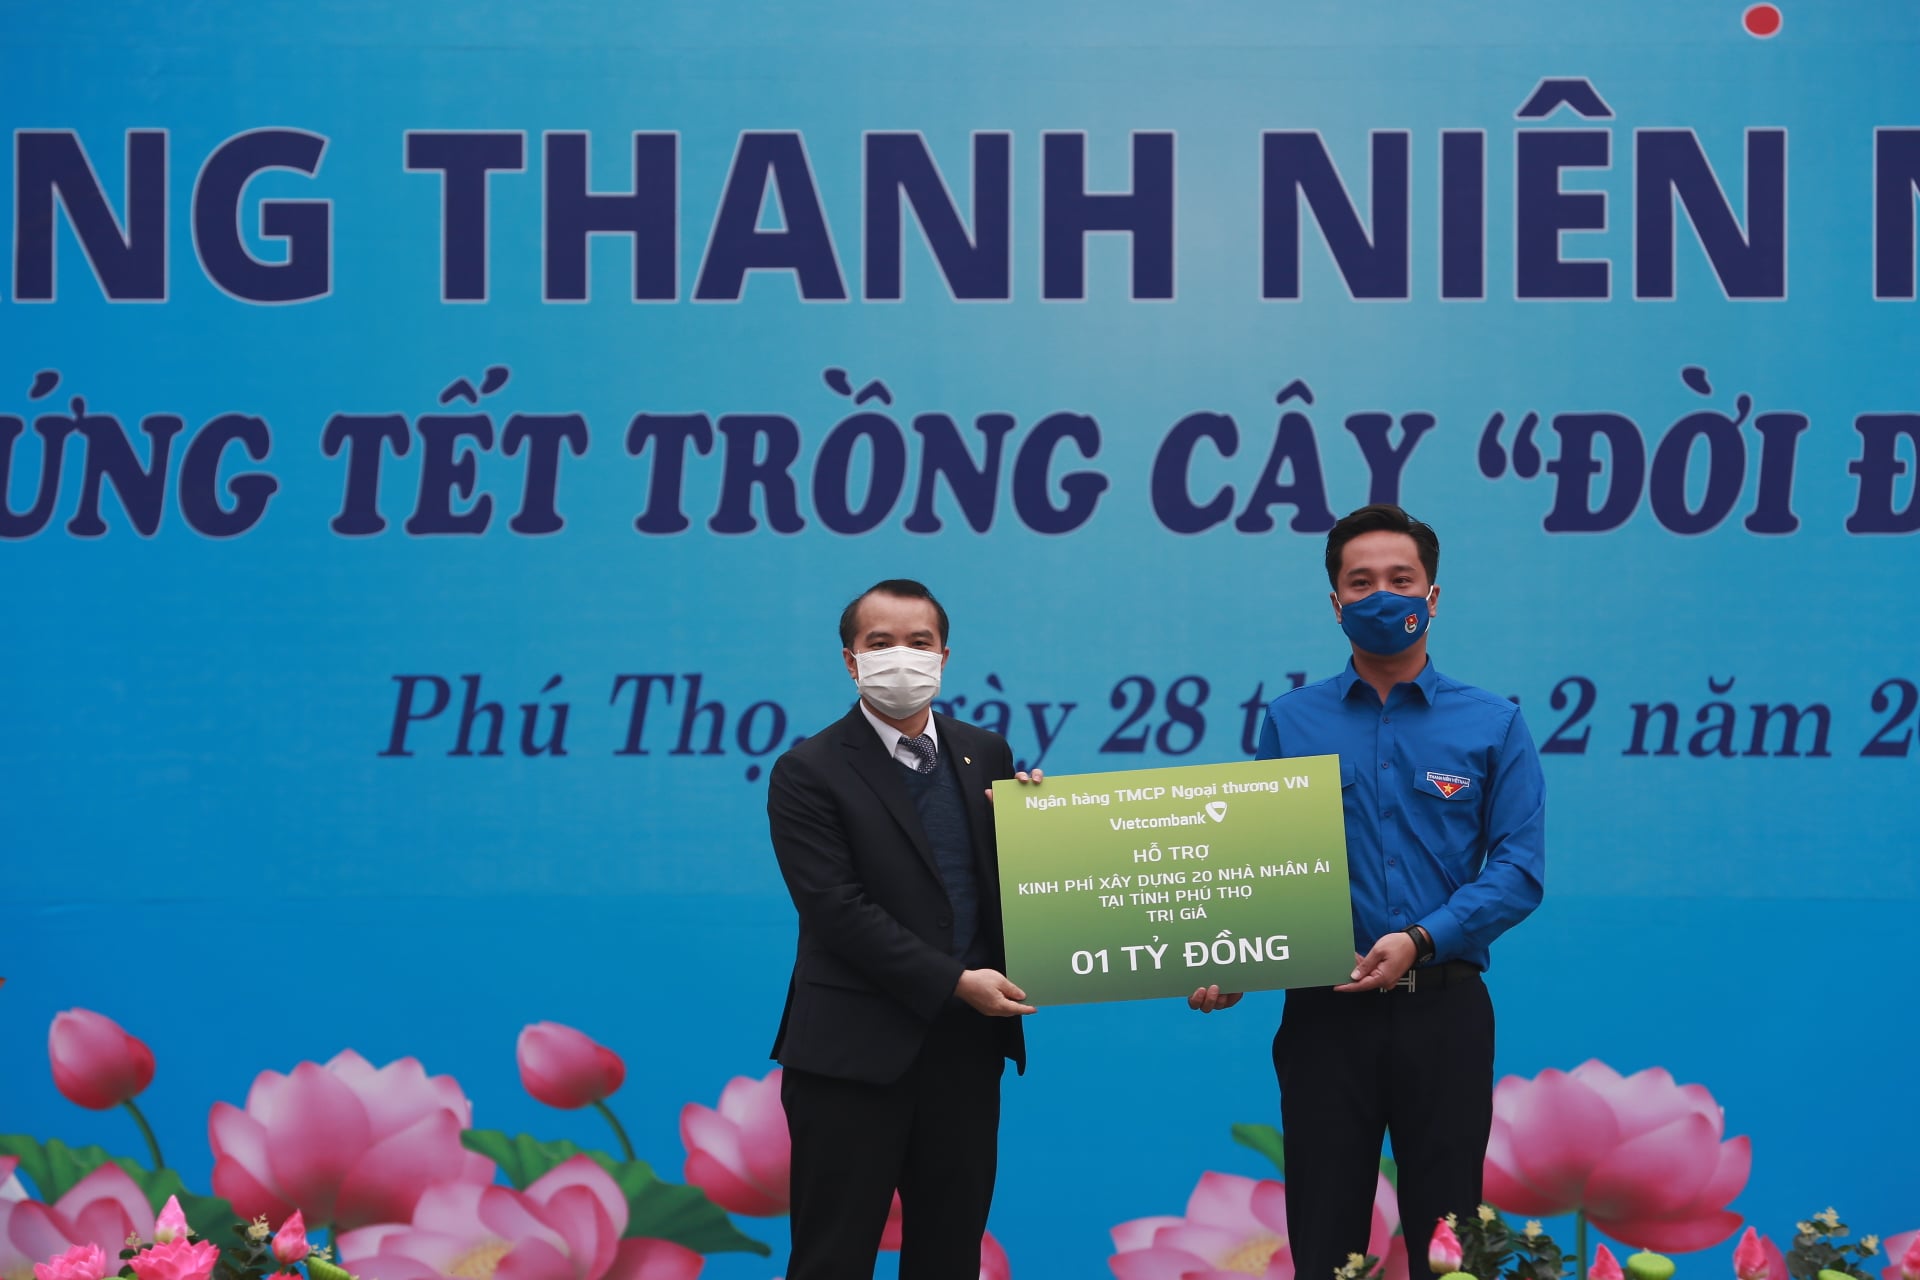 Đại diện Ngân hàng TMCP Ngoại thương Việt Nam (Vietcombank) trao biển hỗ trợ kinh phí xây dựng 20 nhà nhân ái tại tỉnh Phú Thọ, trị giá 01 tỷ đồng.